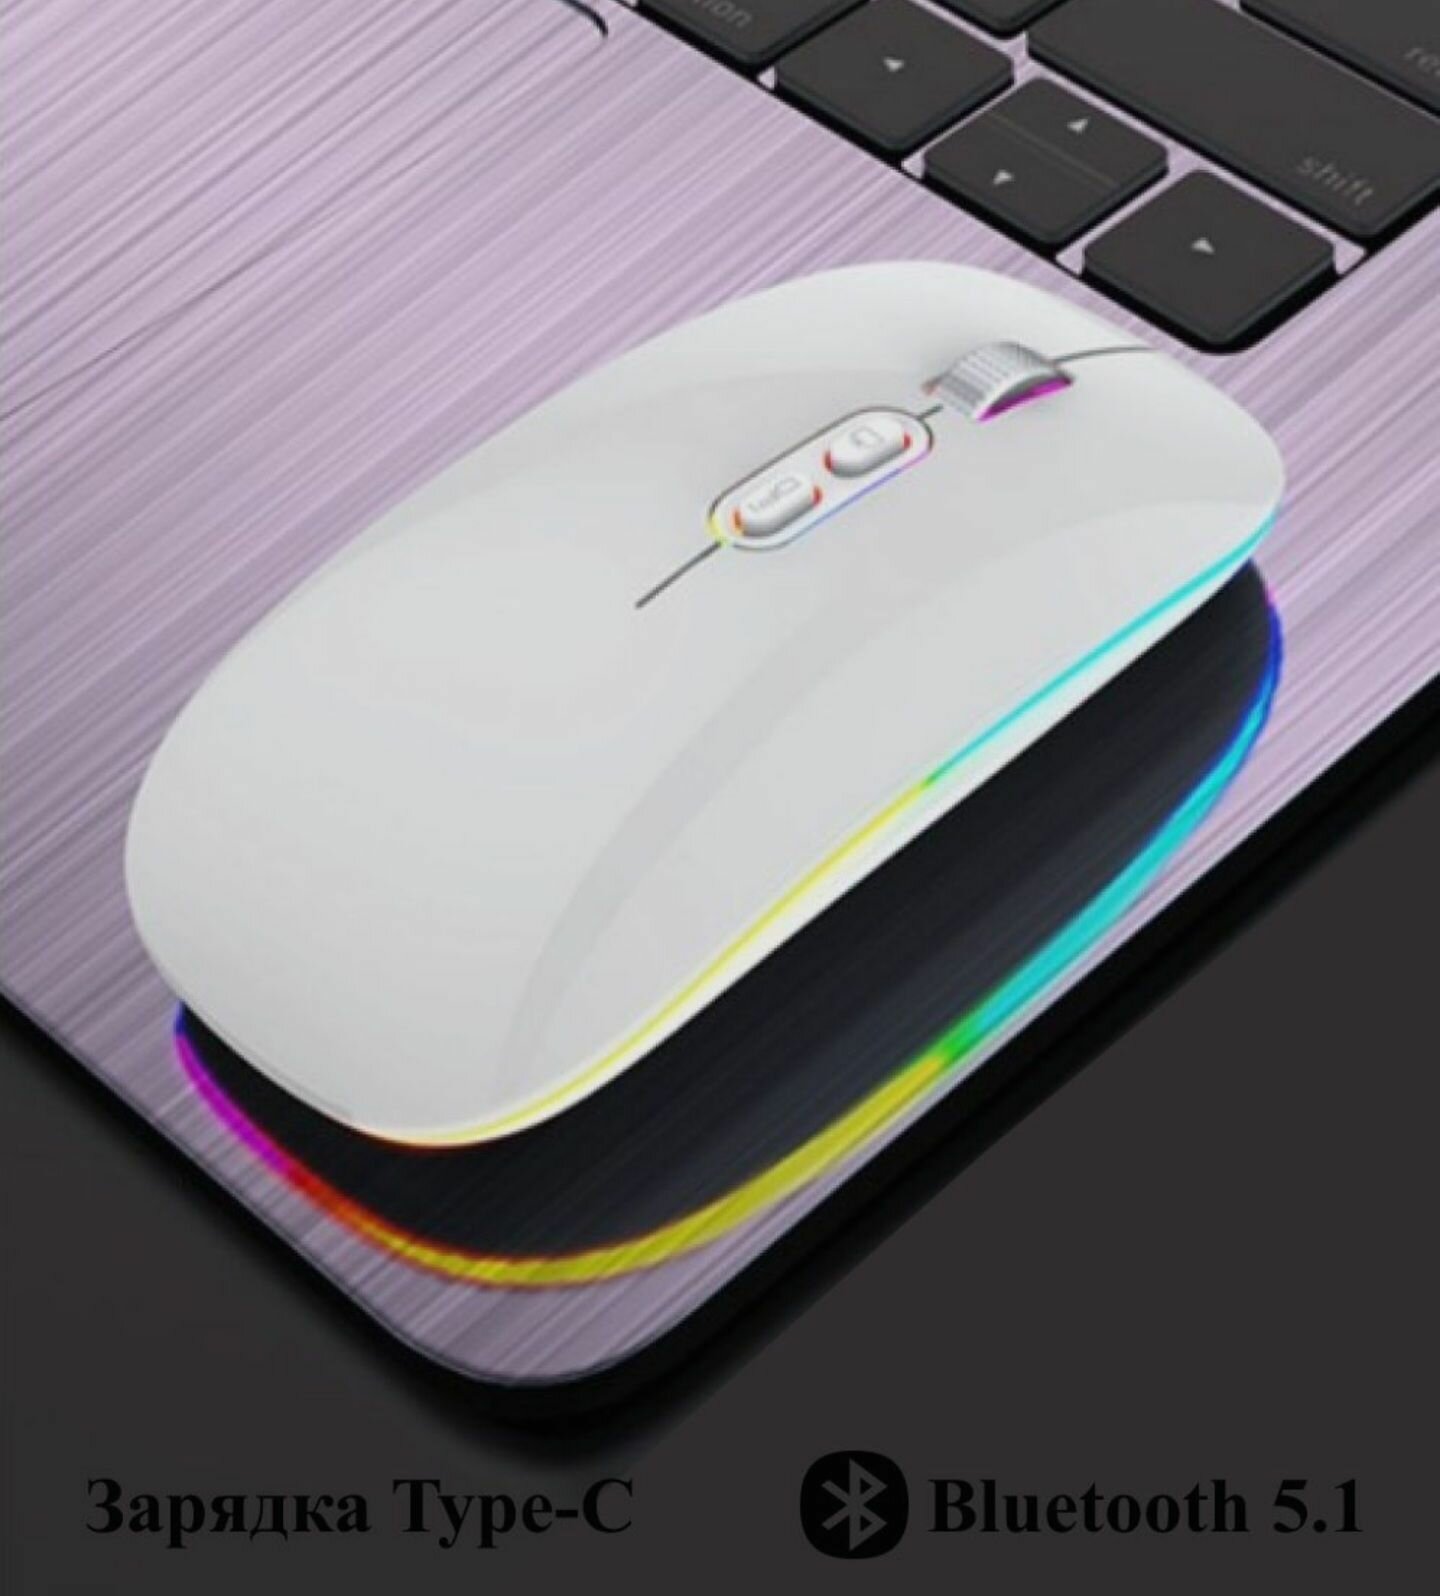 Мышь беспроводная M103 Bluetooth + 2.4G для компьютера ноутбука планшета телефона с подсветкой RGB (белая)